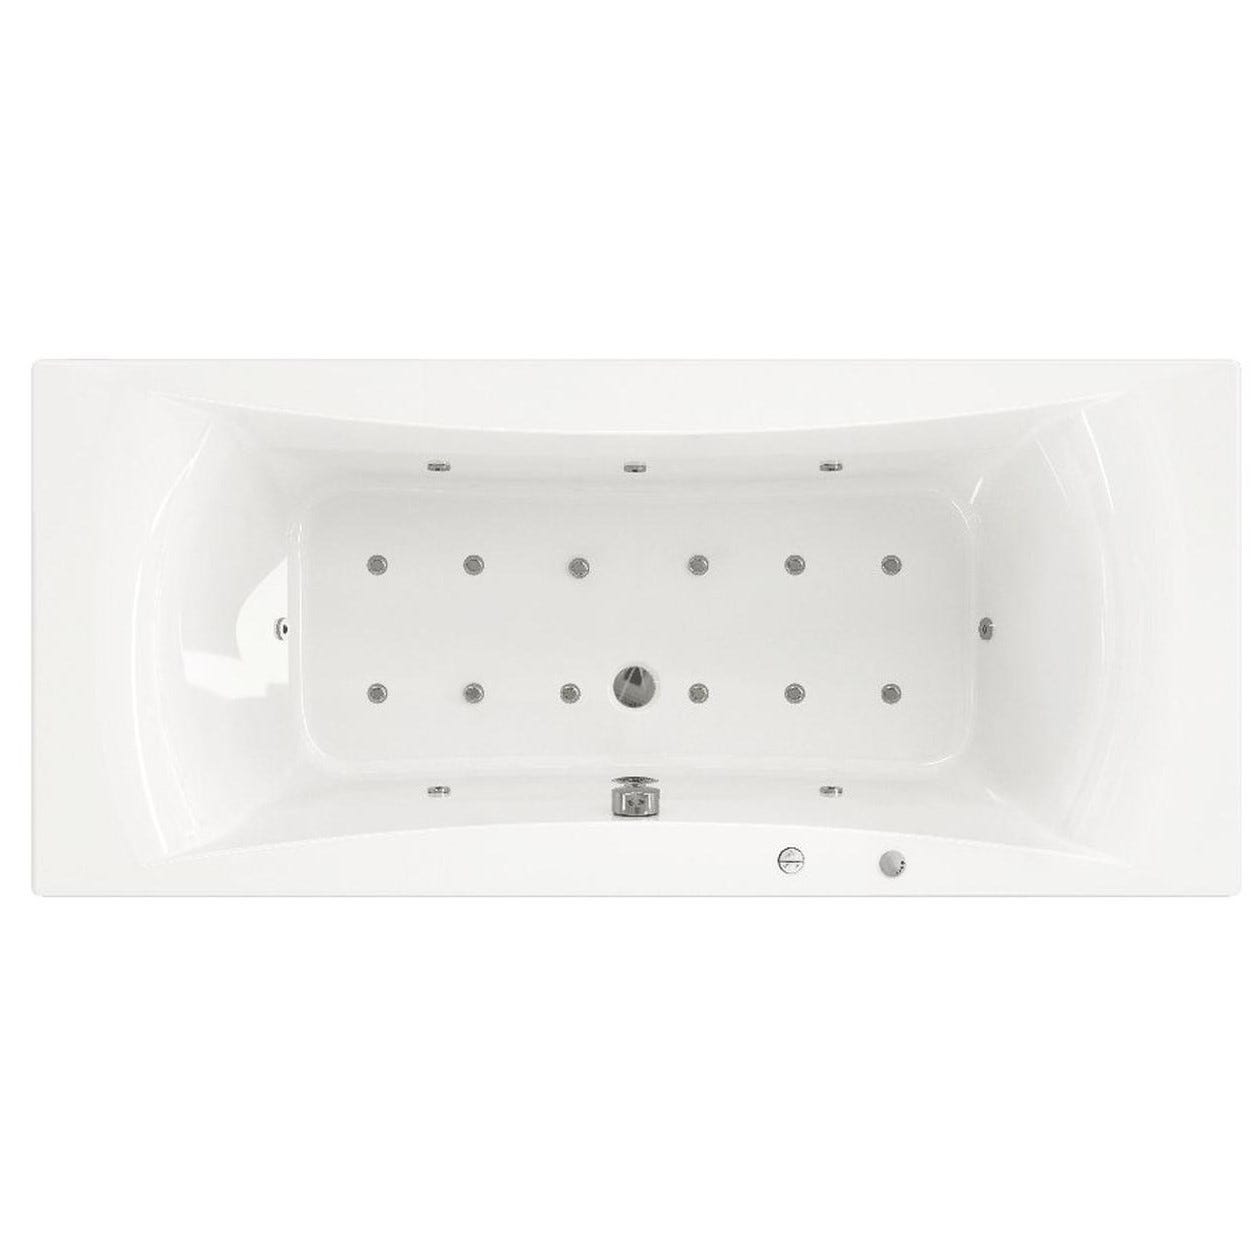 Baignoire balnéo CONCERTO 190x90 sur châssis métal, système balnéo VITALITÉ tête bain à droite 3